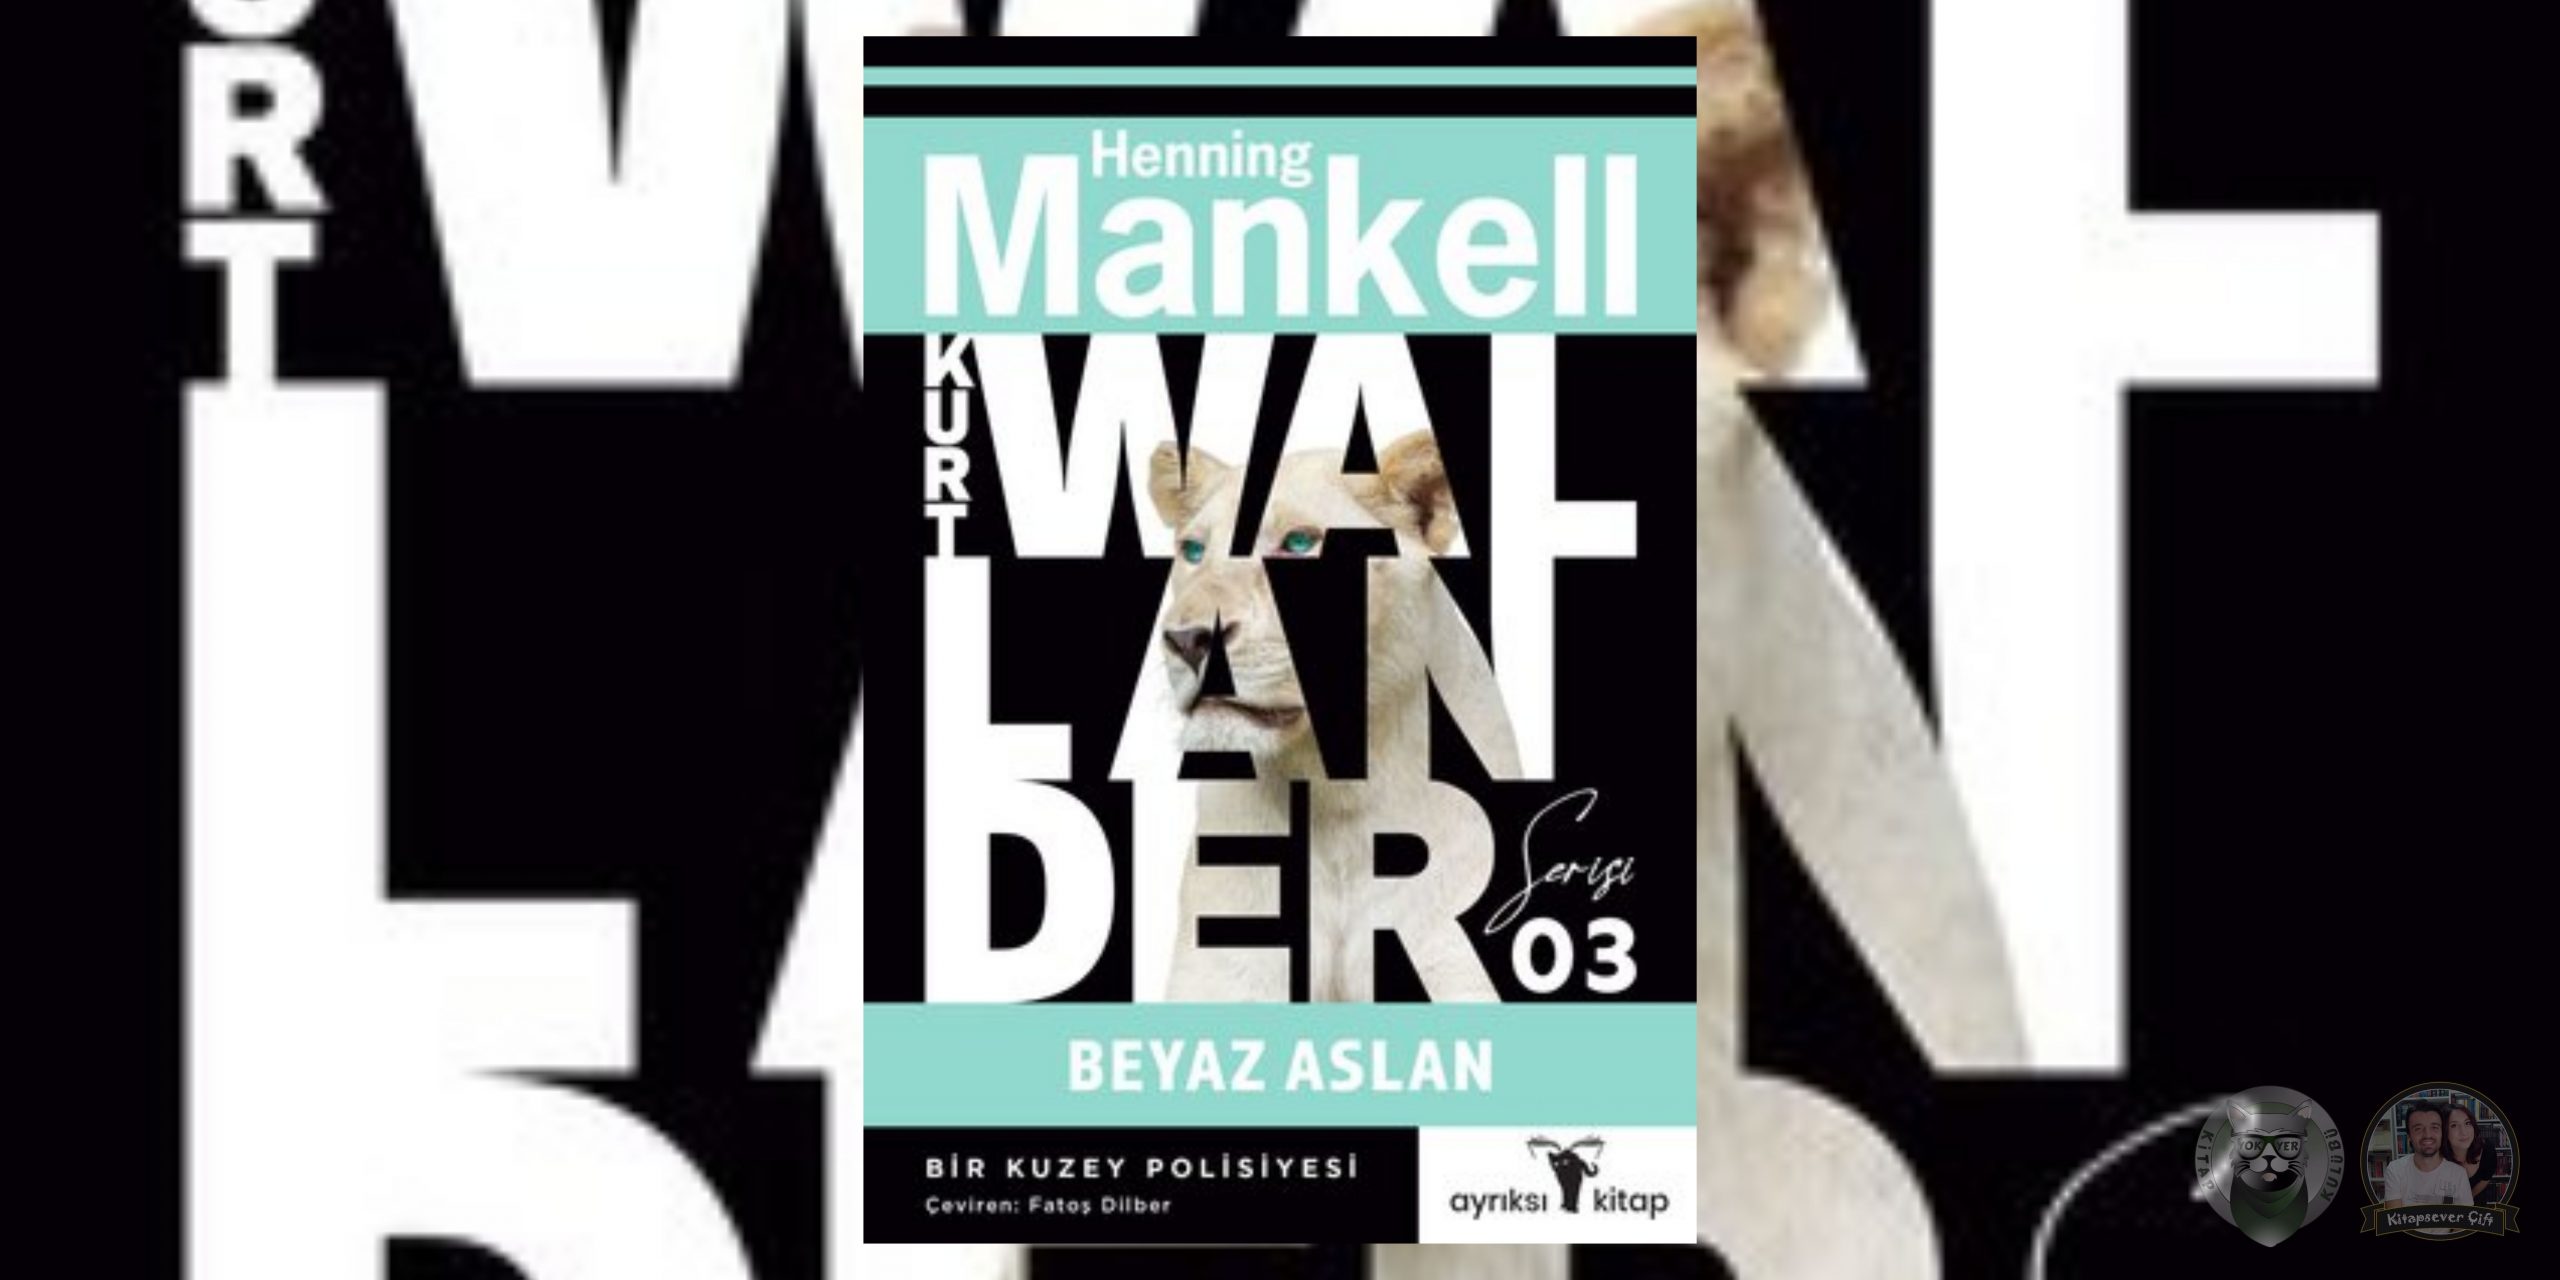 henning mankell - kurt wallander kitap serisi 3 – beyaz aslan scaled